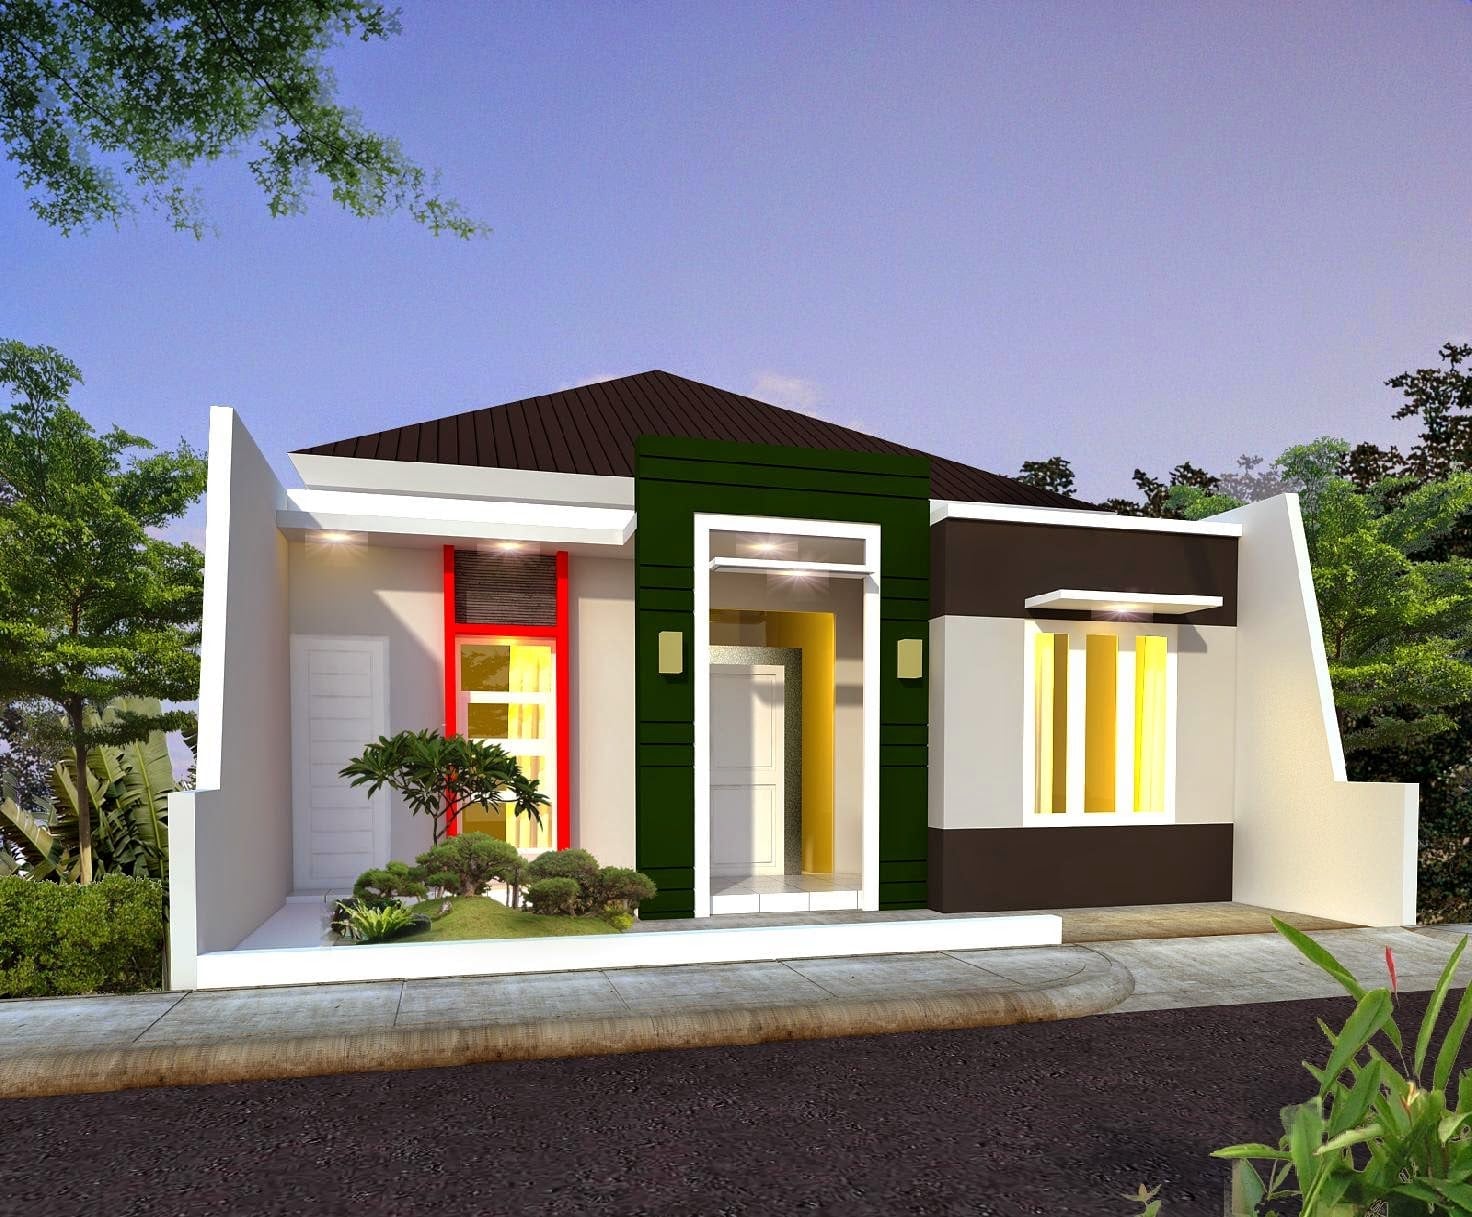 Sempurna Desain Rumah Minimalis Elegan Terbaru 68 Tentang Ide Desain Rumah dengan Desain Rumah Minimalis Elegan Terbaru